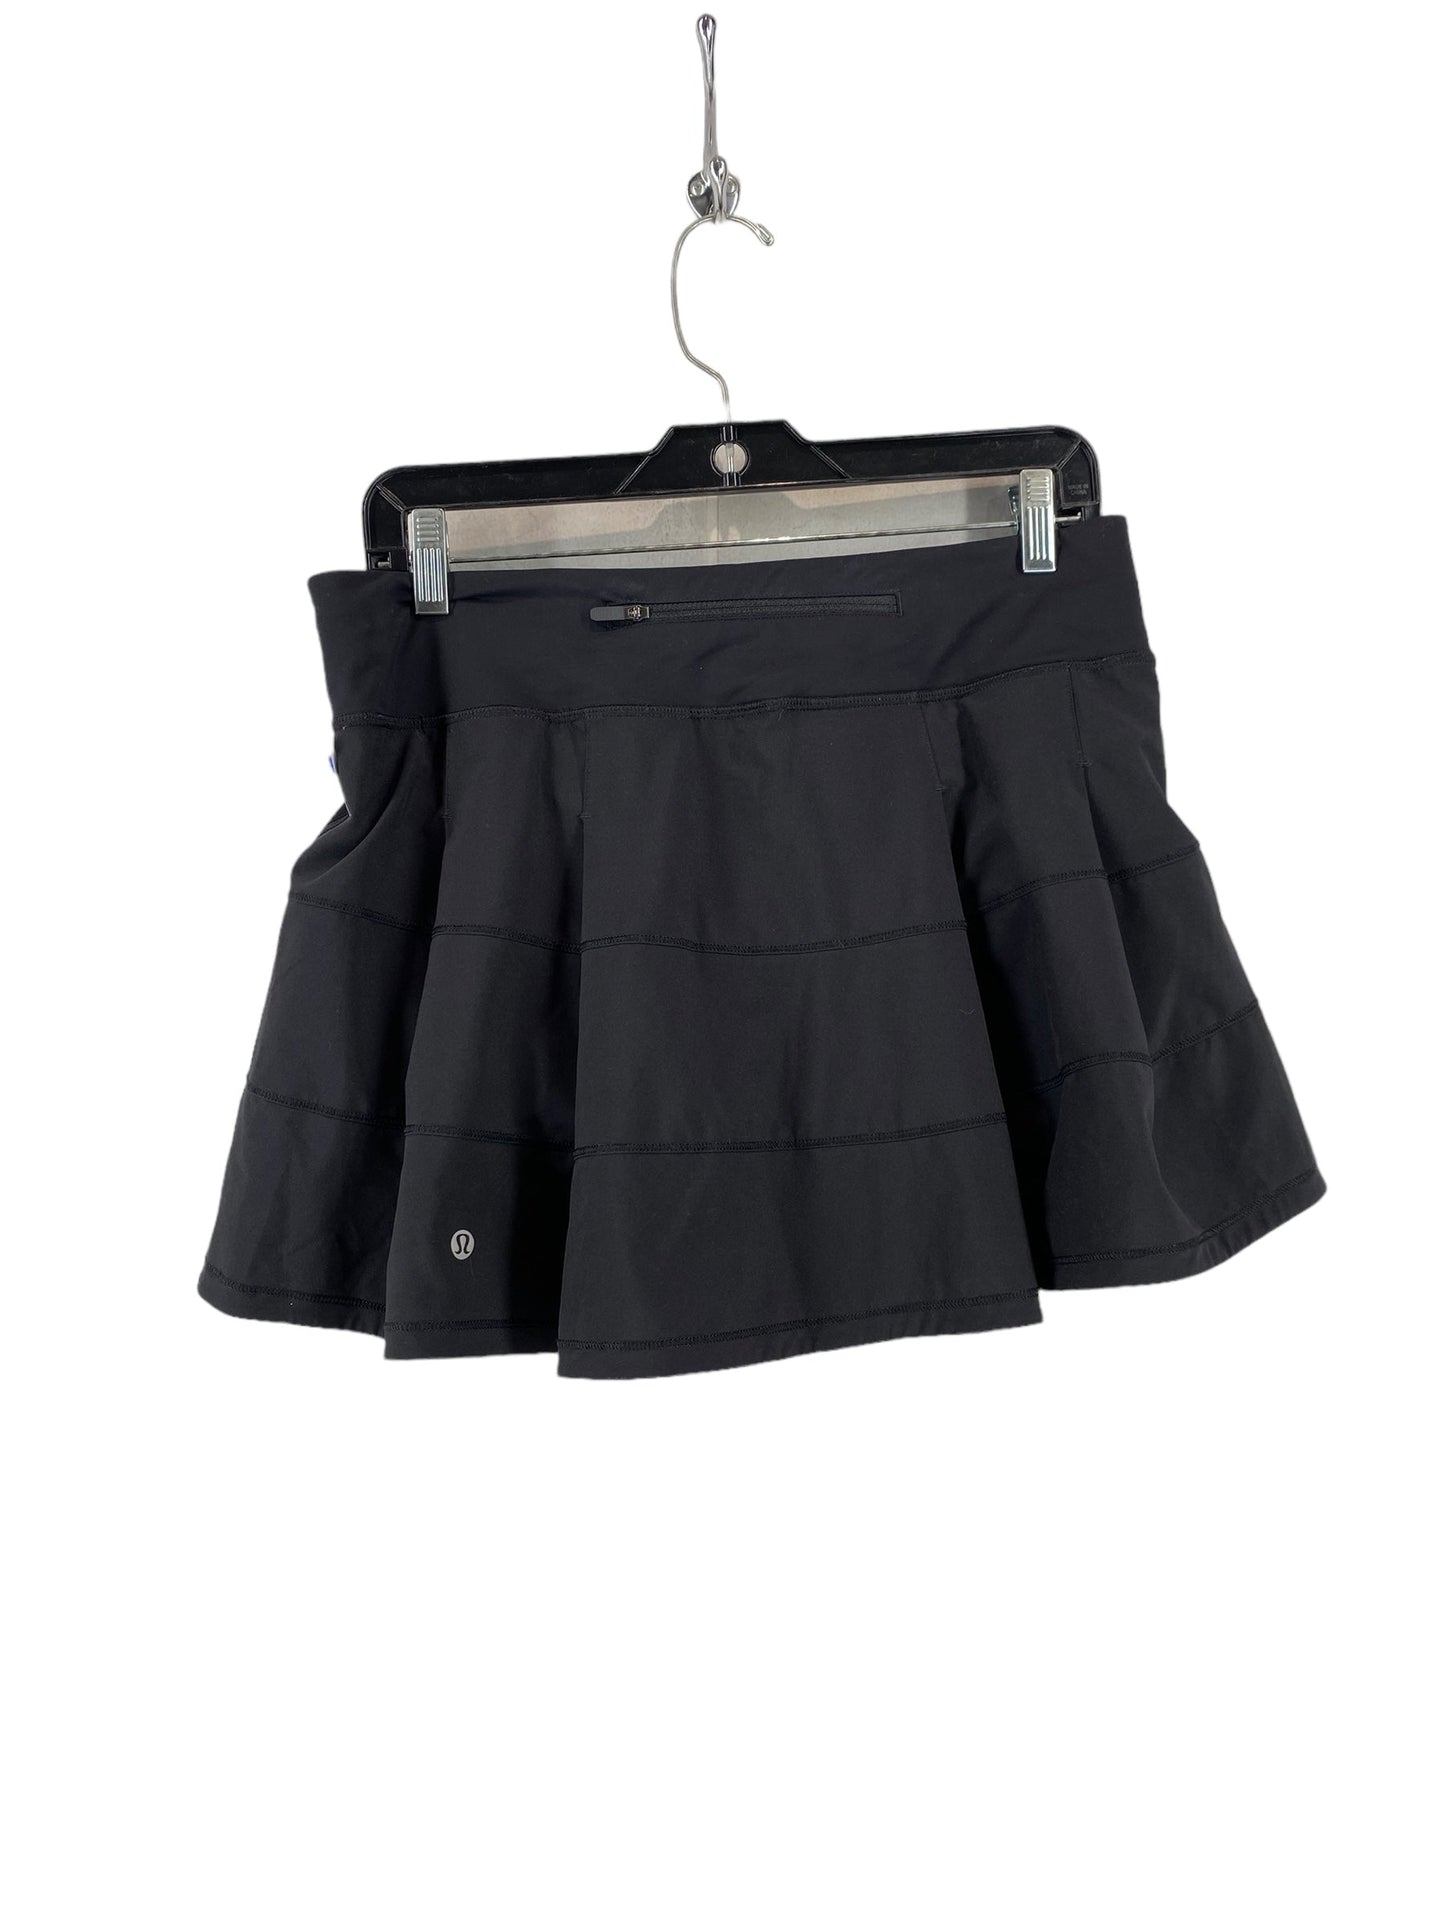 Black Athletic Skirt Lululemon, Size 8